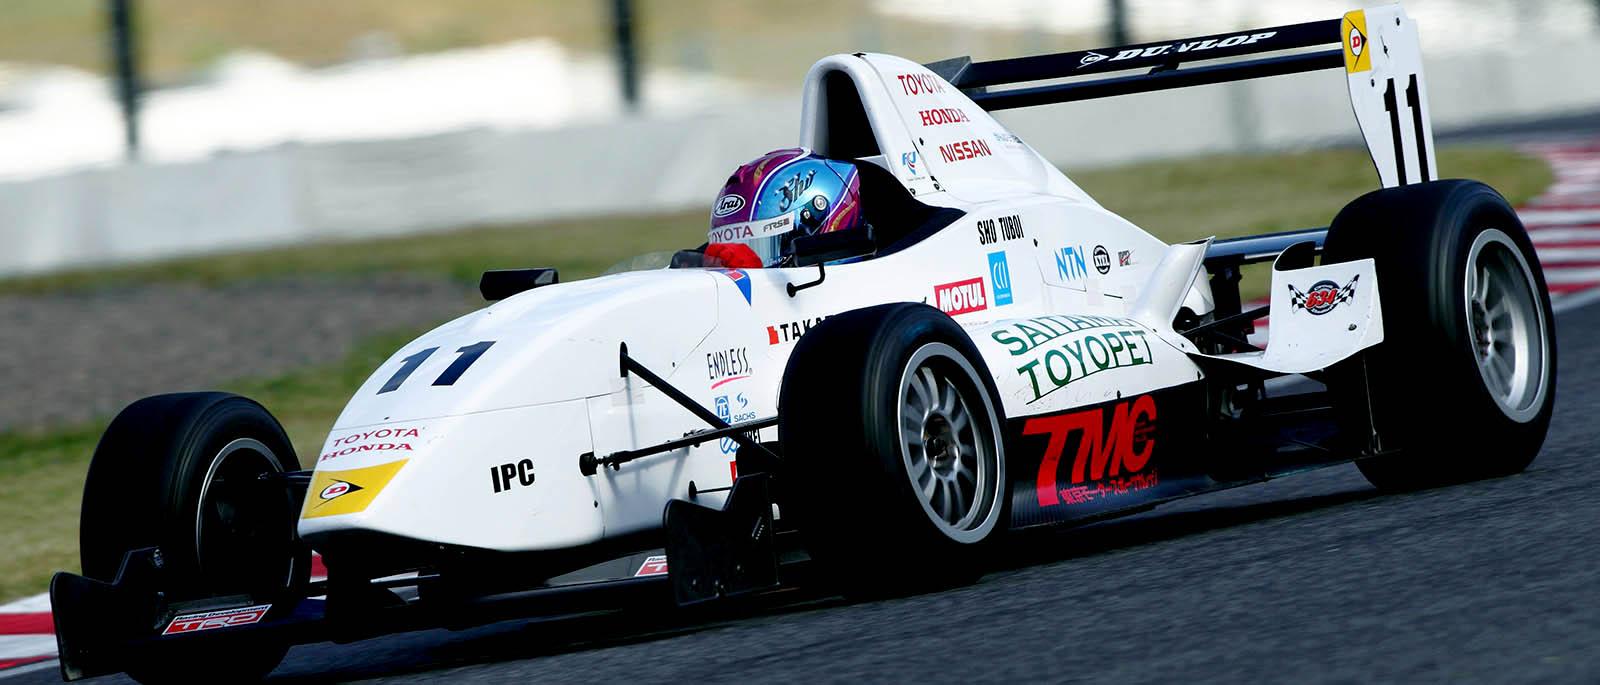 2012年 FCJ（フォーミュラチャレンジ・ジャパン）でフォーミュラカーのレースデビューを果たした坪井翔